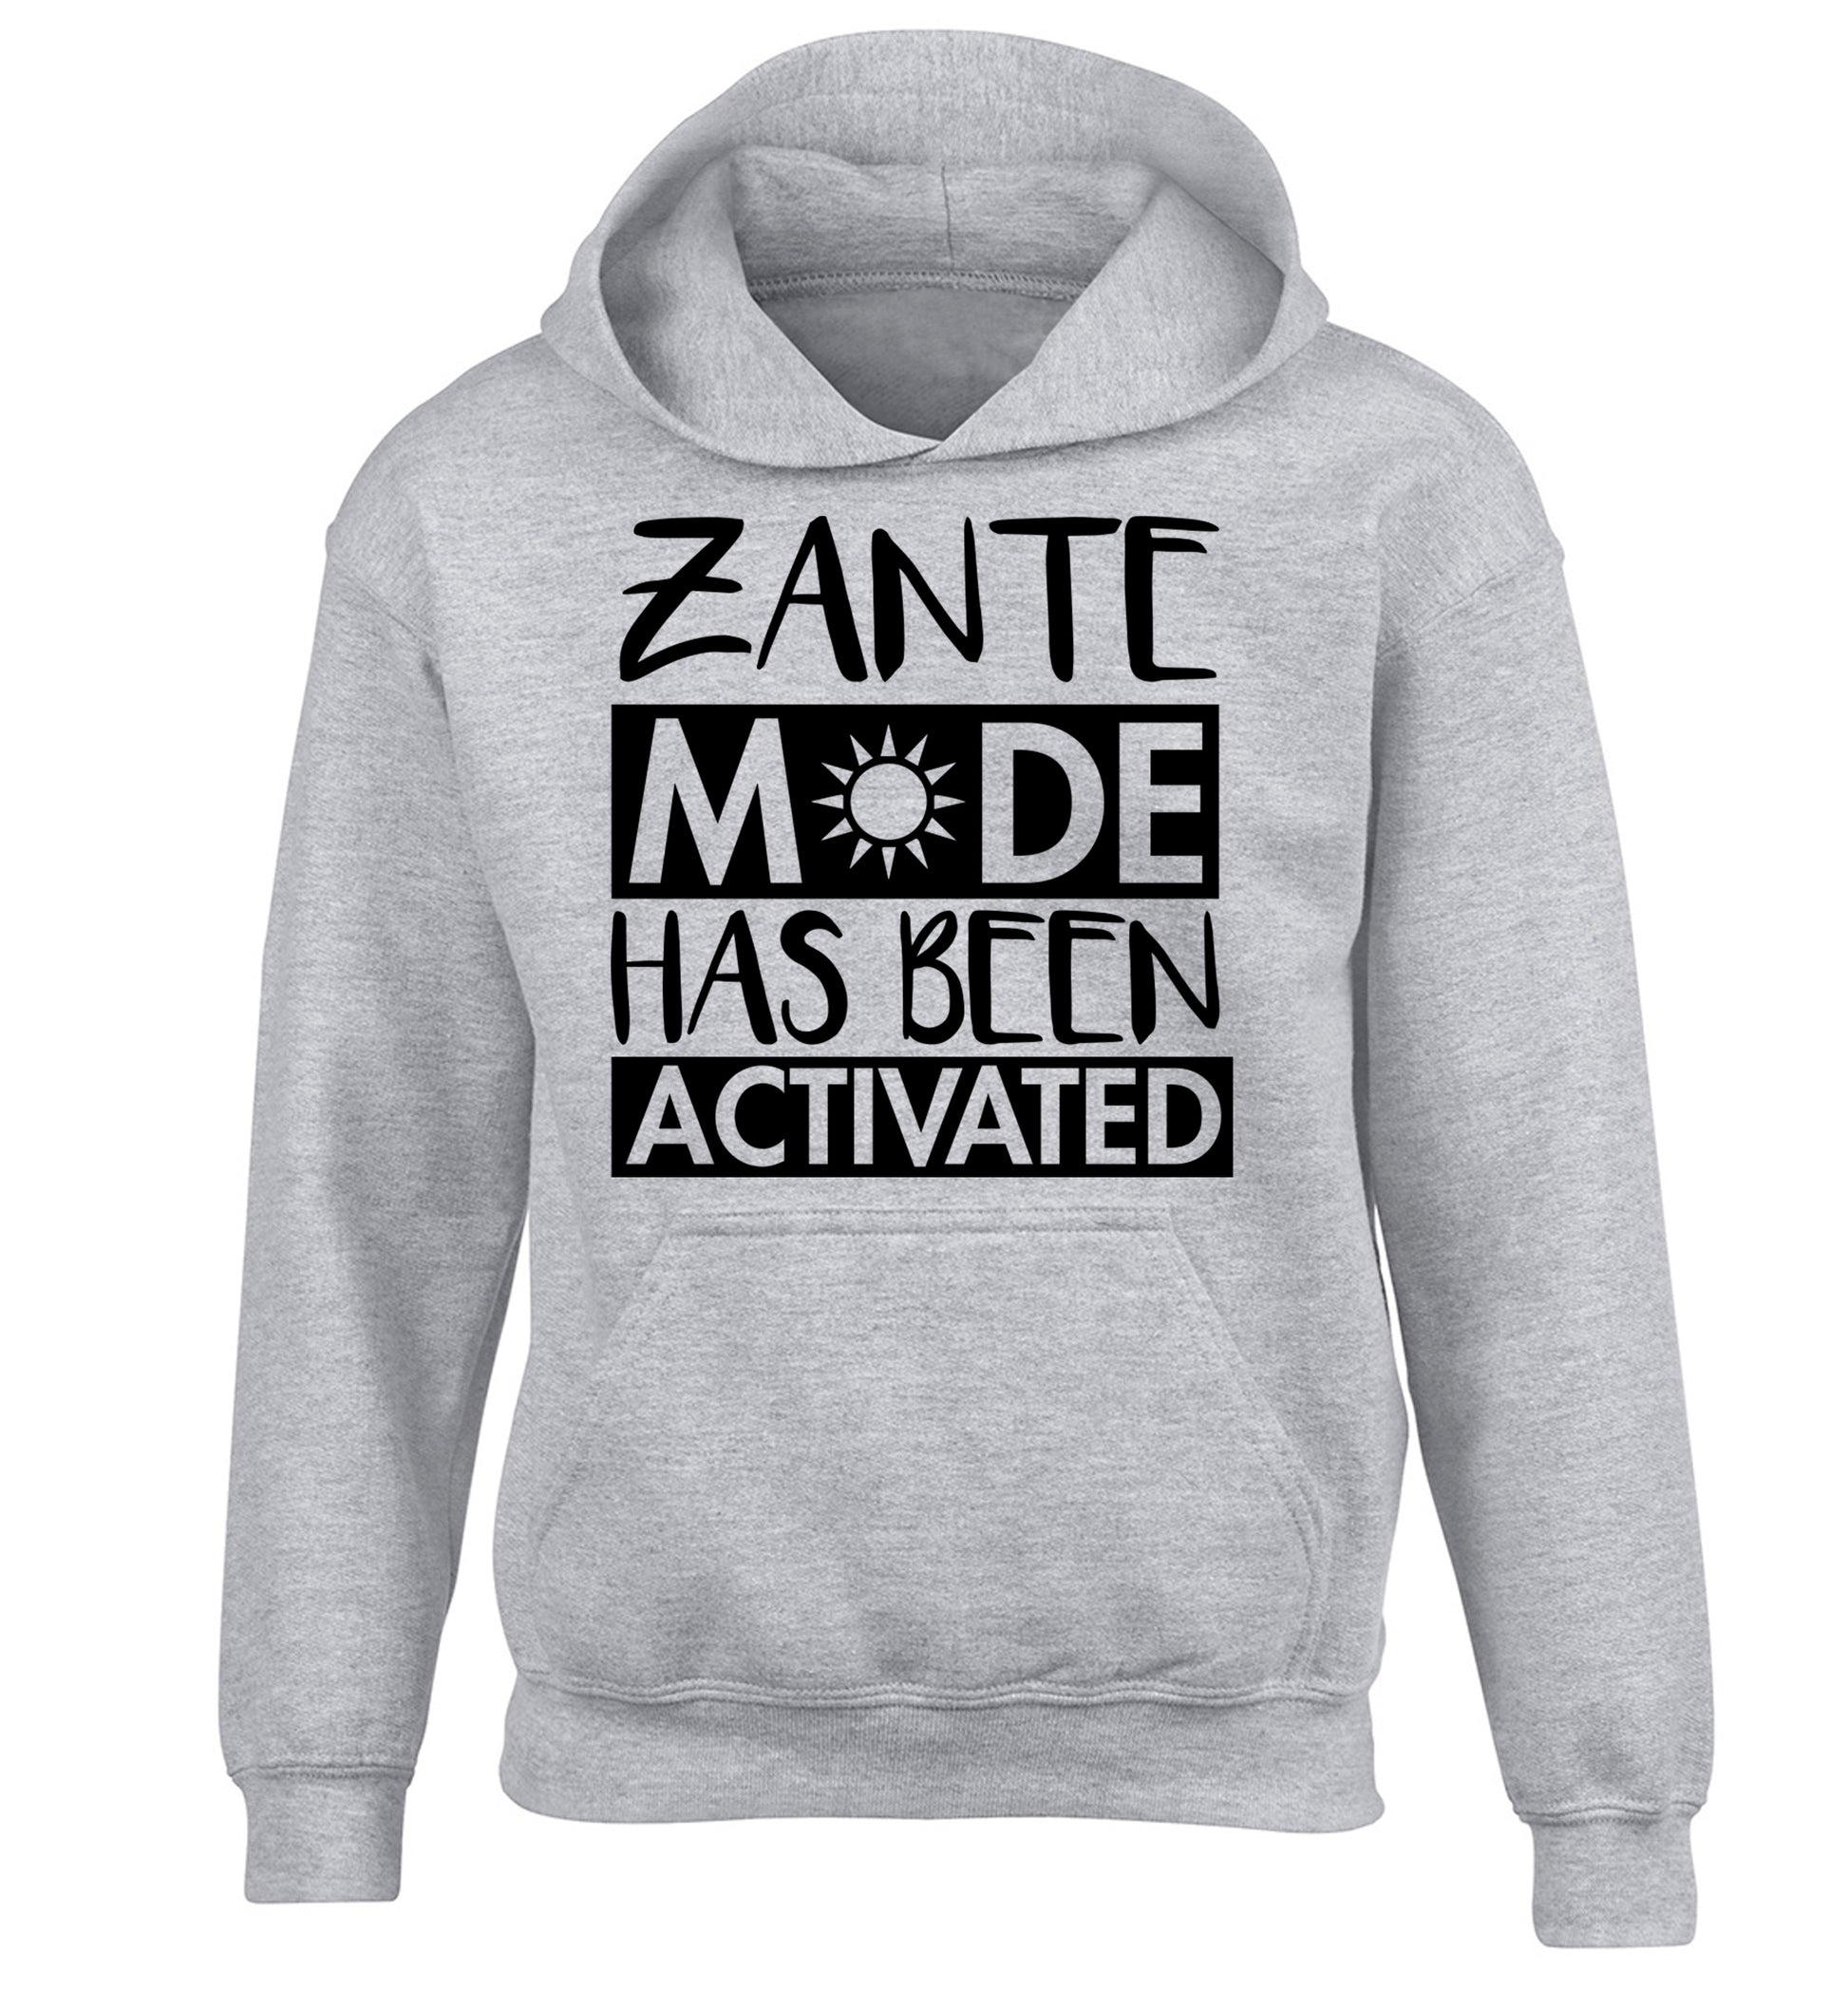 Zante mode has been activated children's grey hoodie 12-13 Years